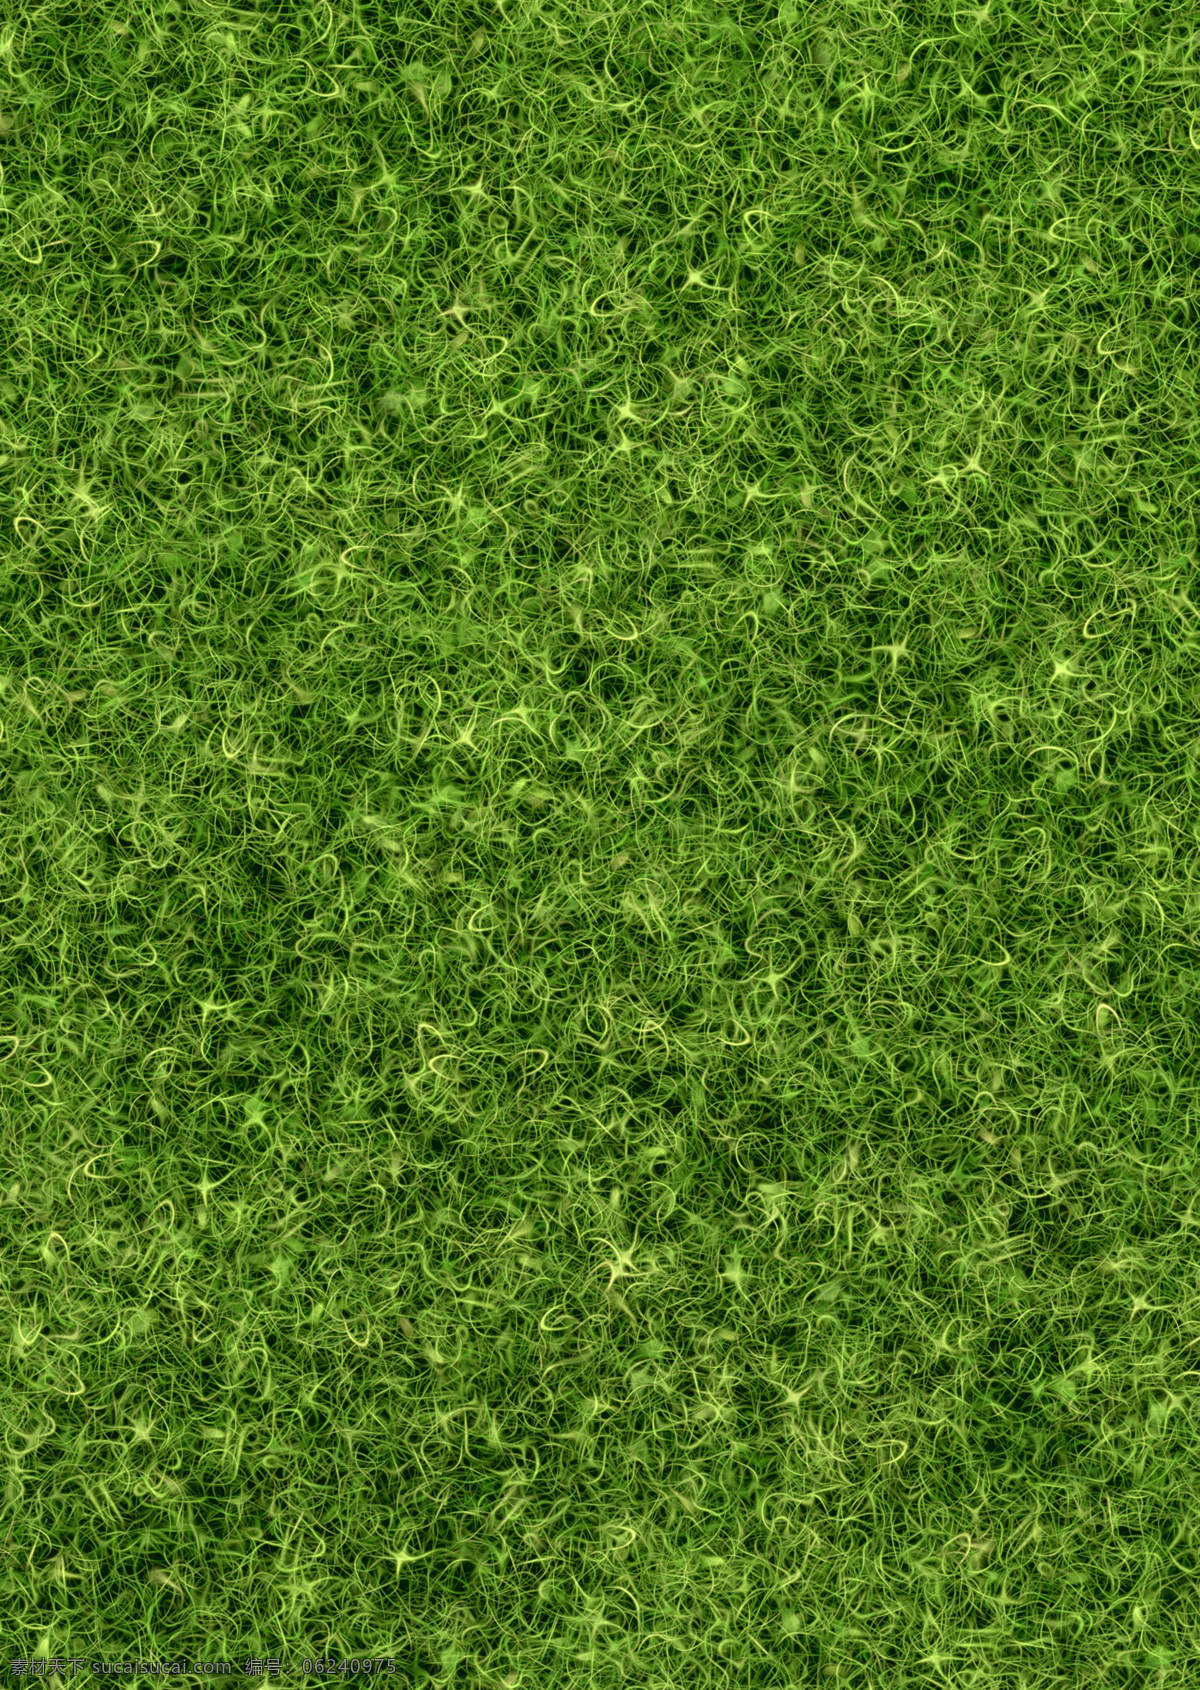 草地 夏天 自然 户外 春天 绿草 田野 农业 草坪 小麦草 绿色背景 绿色纹理 花草 野餐 贴图 底纹 生物世界